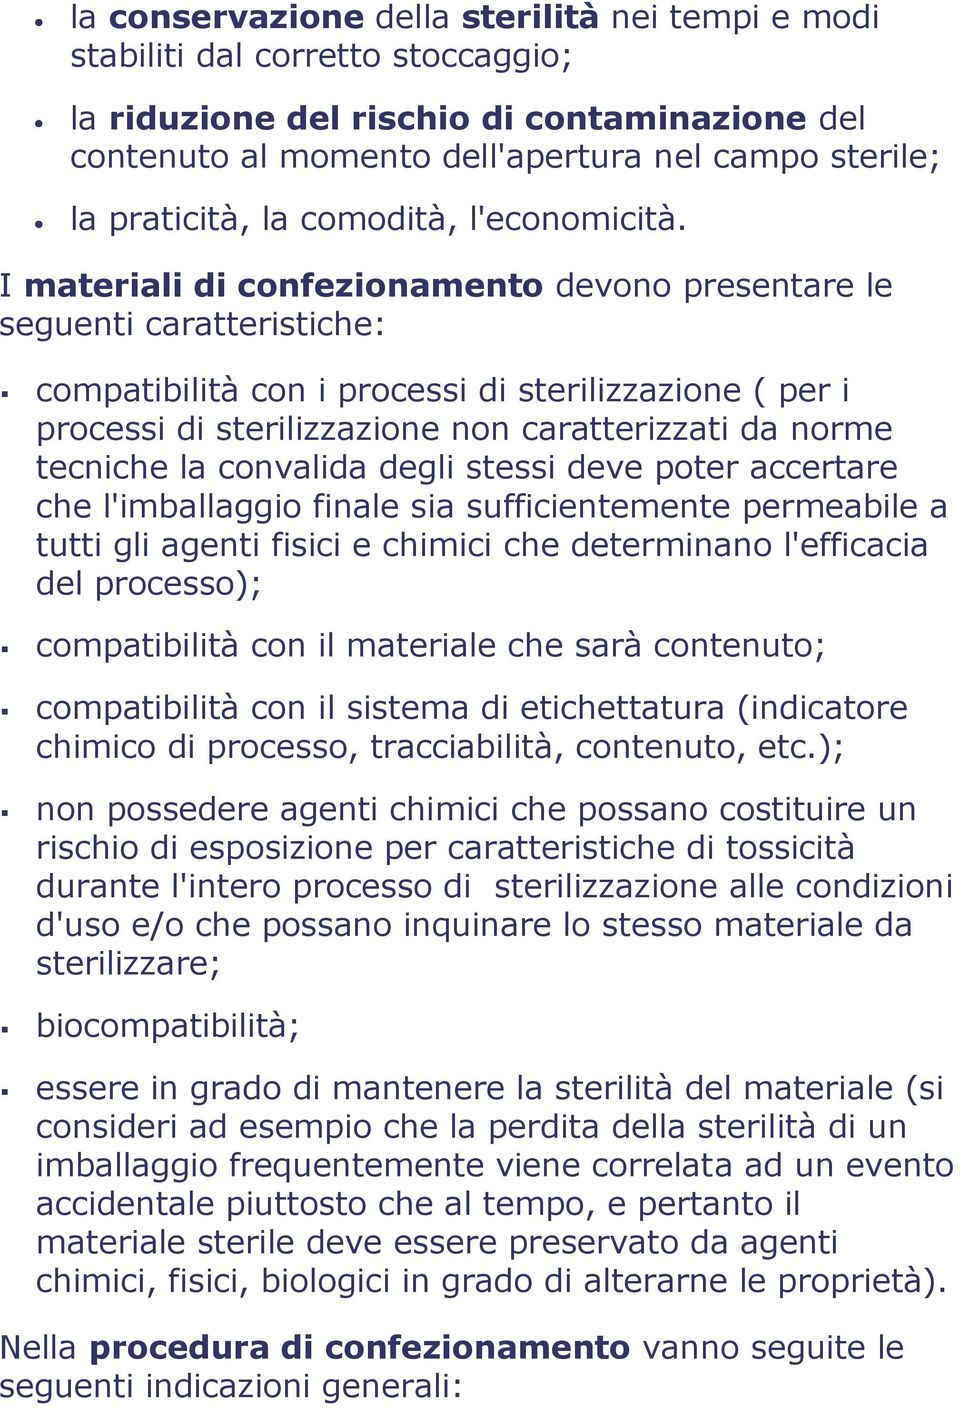 I materiali di confezionamento devono presentare le seguenti caratteristiche: compatibilità con i processi di sterilizzazione ( per i processi di sterilizzazione non caratterizzati da norme tecniche